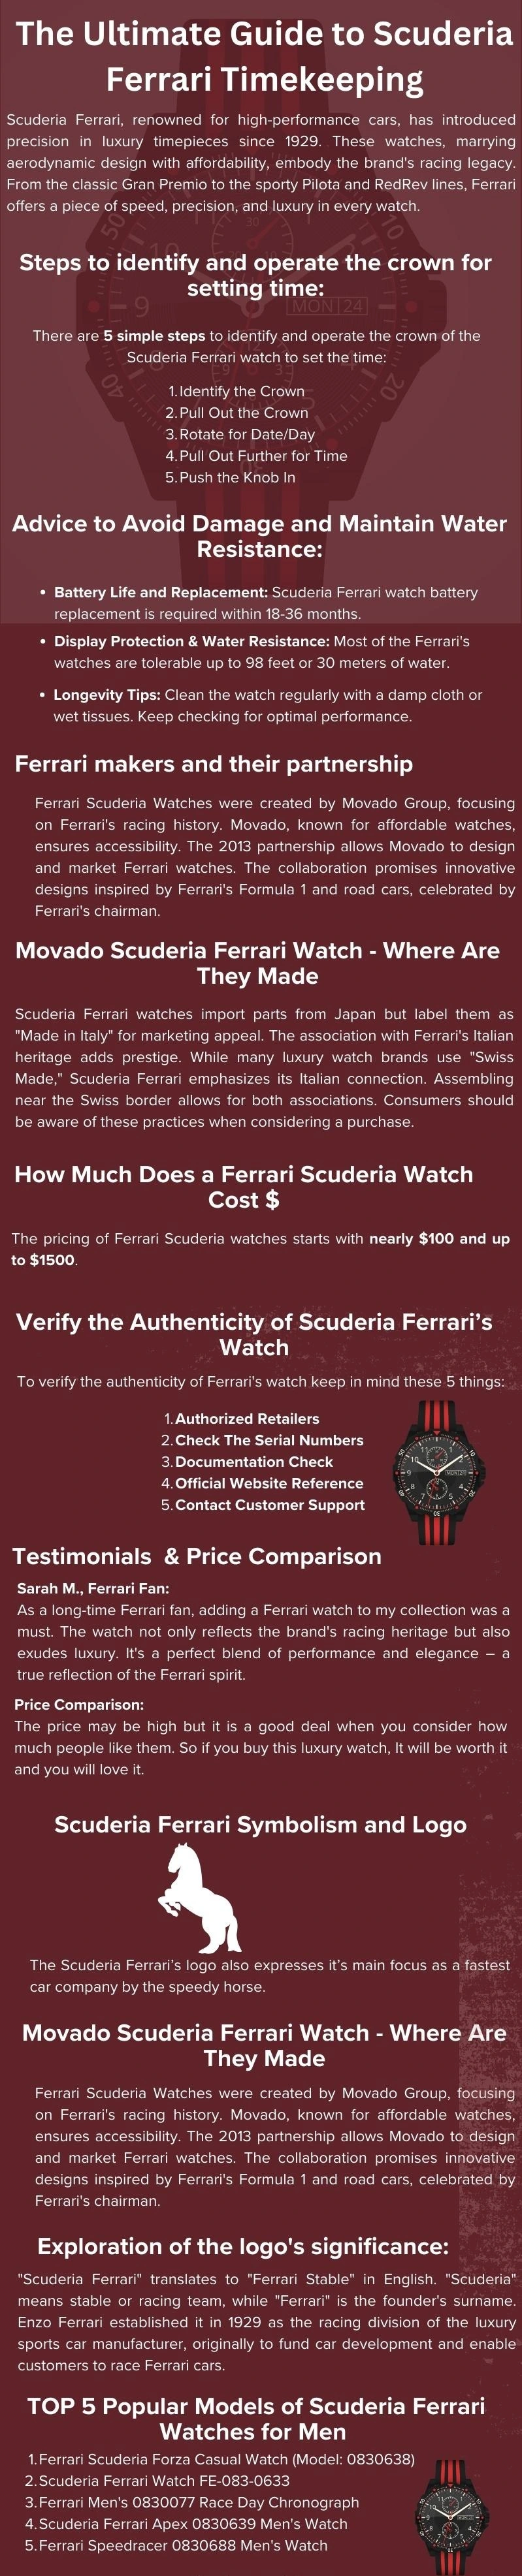 Scuderia Ferrari Watch, Scuderia Ferrari Watchs,Ferrari Watch, Wikilearns 